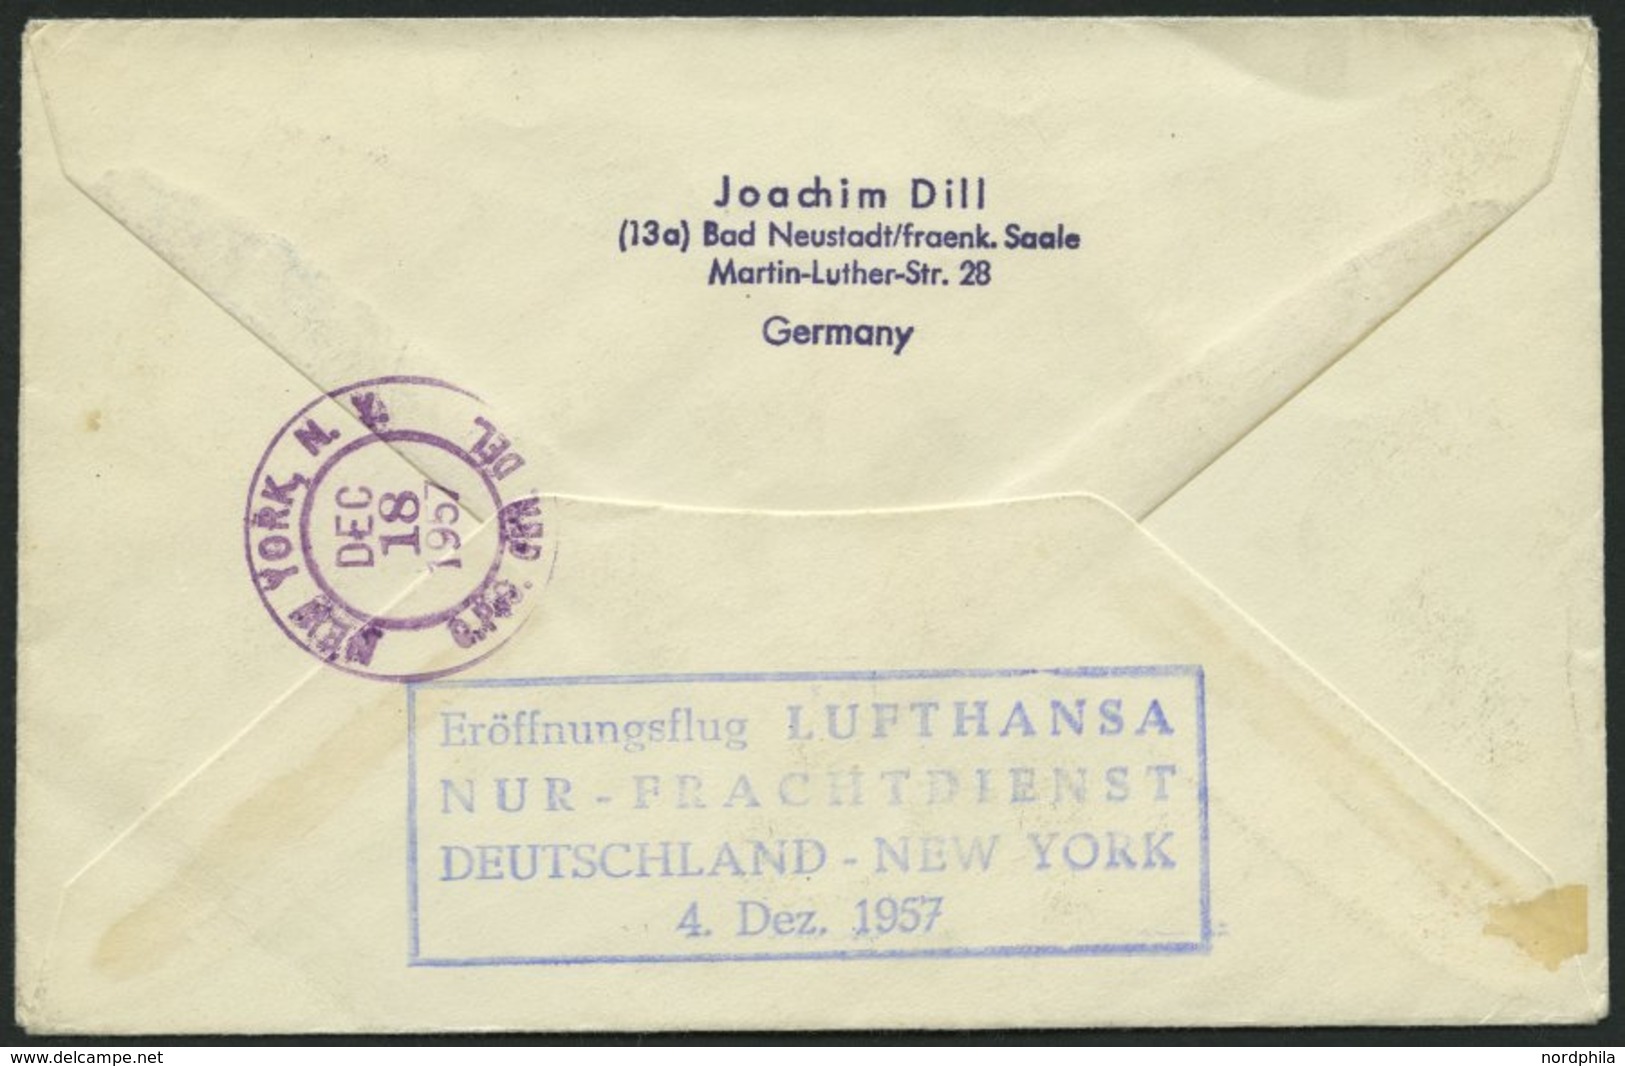 DEUTSCHE LUFTHANSA Brief , 4.12.1957, Deutschland-New York, Nur Frachtdienst, Prachtbrief - Gebruikt